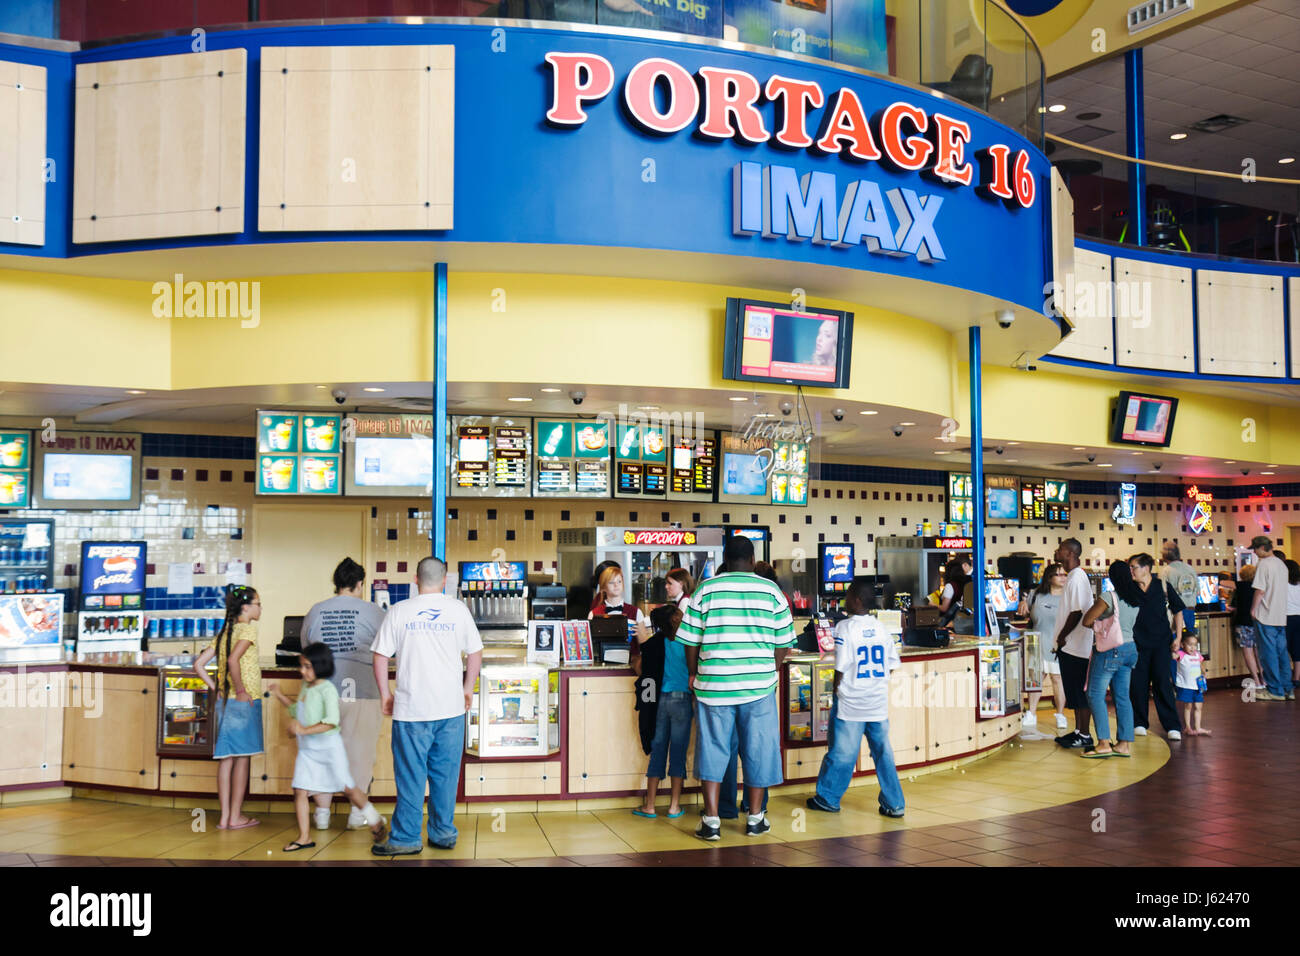 Portage Indiana, 16 IMAX, cinéma complexe, cuisine, comptoir, encas, encas, pop-corn, boissons, boissons, boissons, familles, divertissement, multiculturetu Banque D'Images